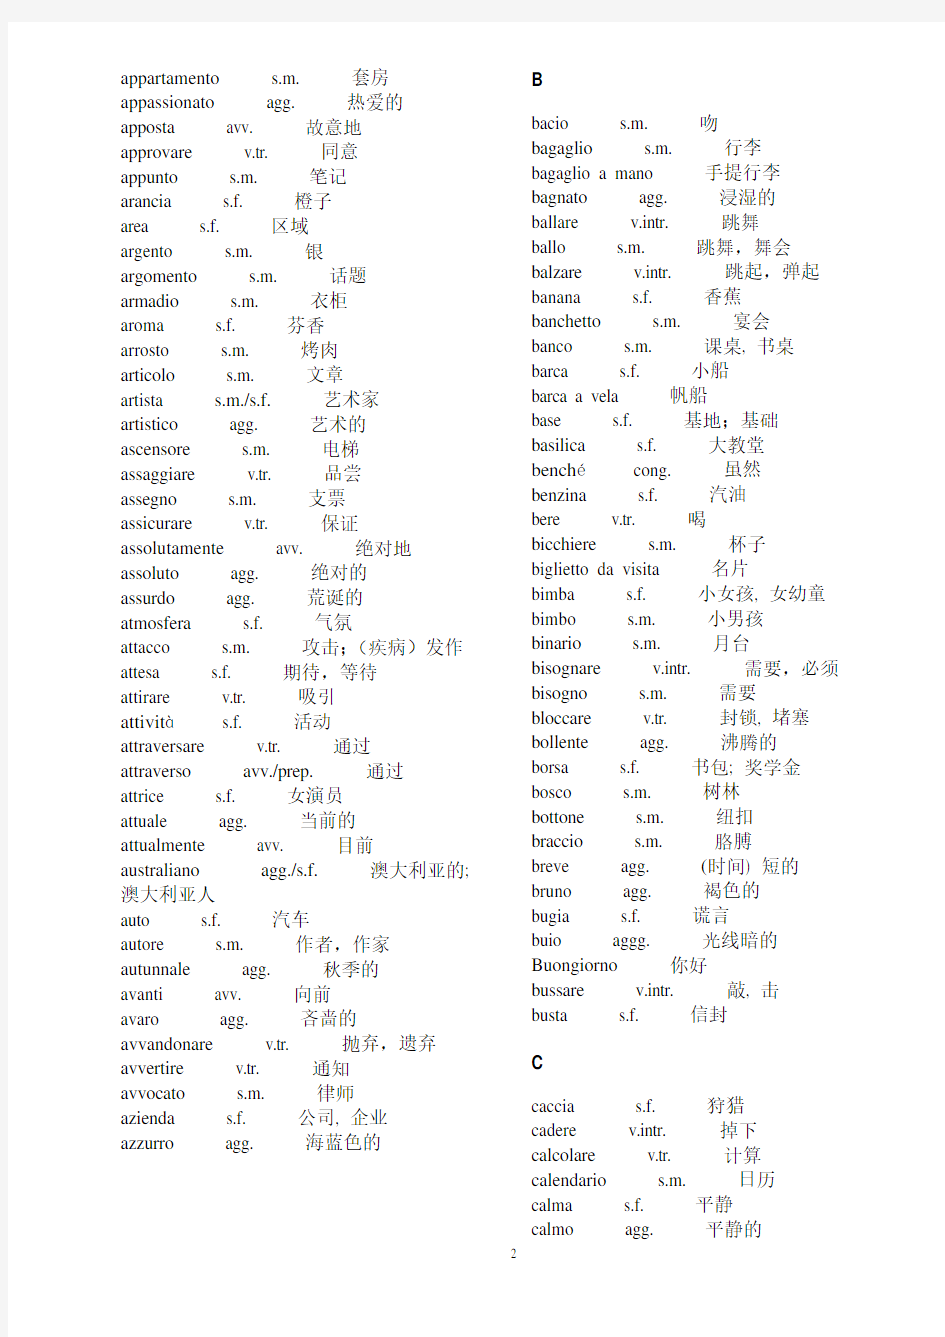 意大利语1500多个常用词汇